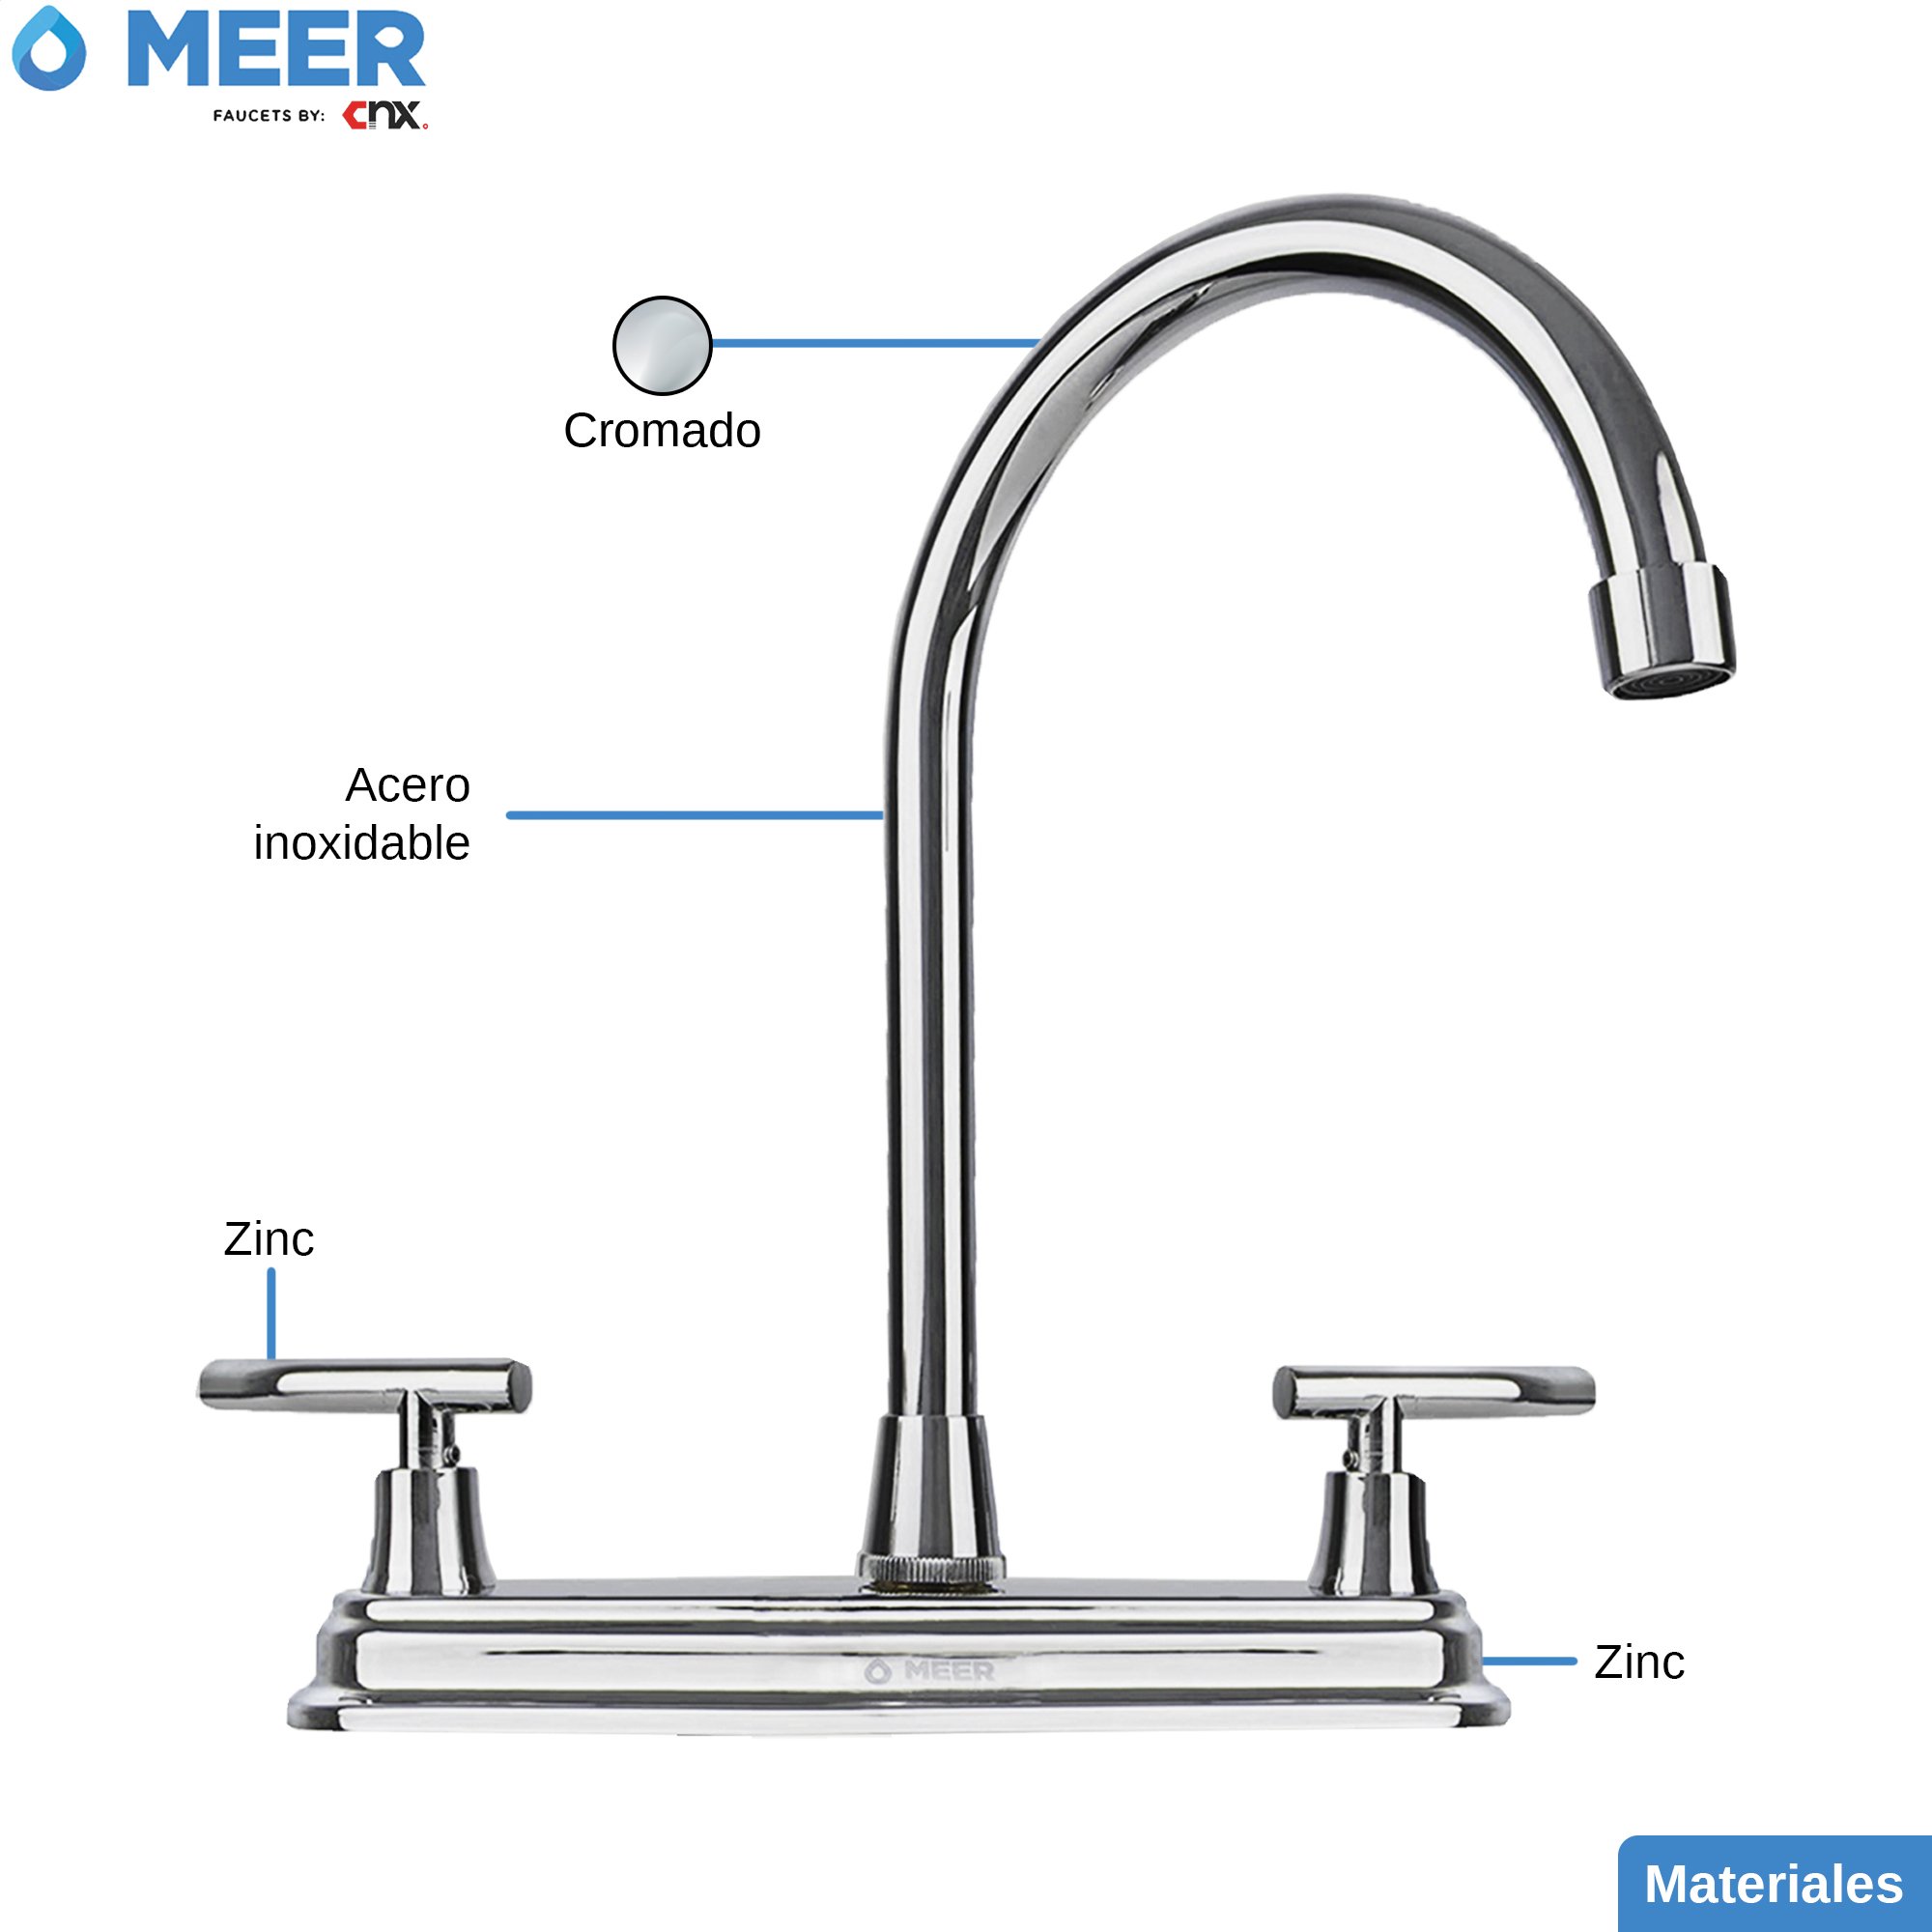 MEER Faucets by CNX | Mezcladora para Fregadero de Acero Inoxidable y Zinc Cromado